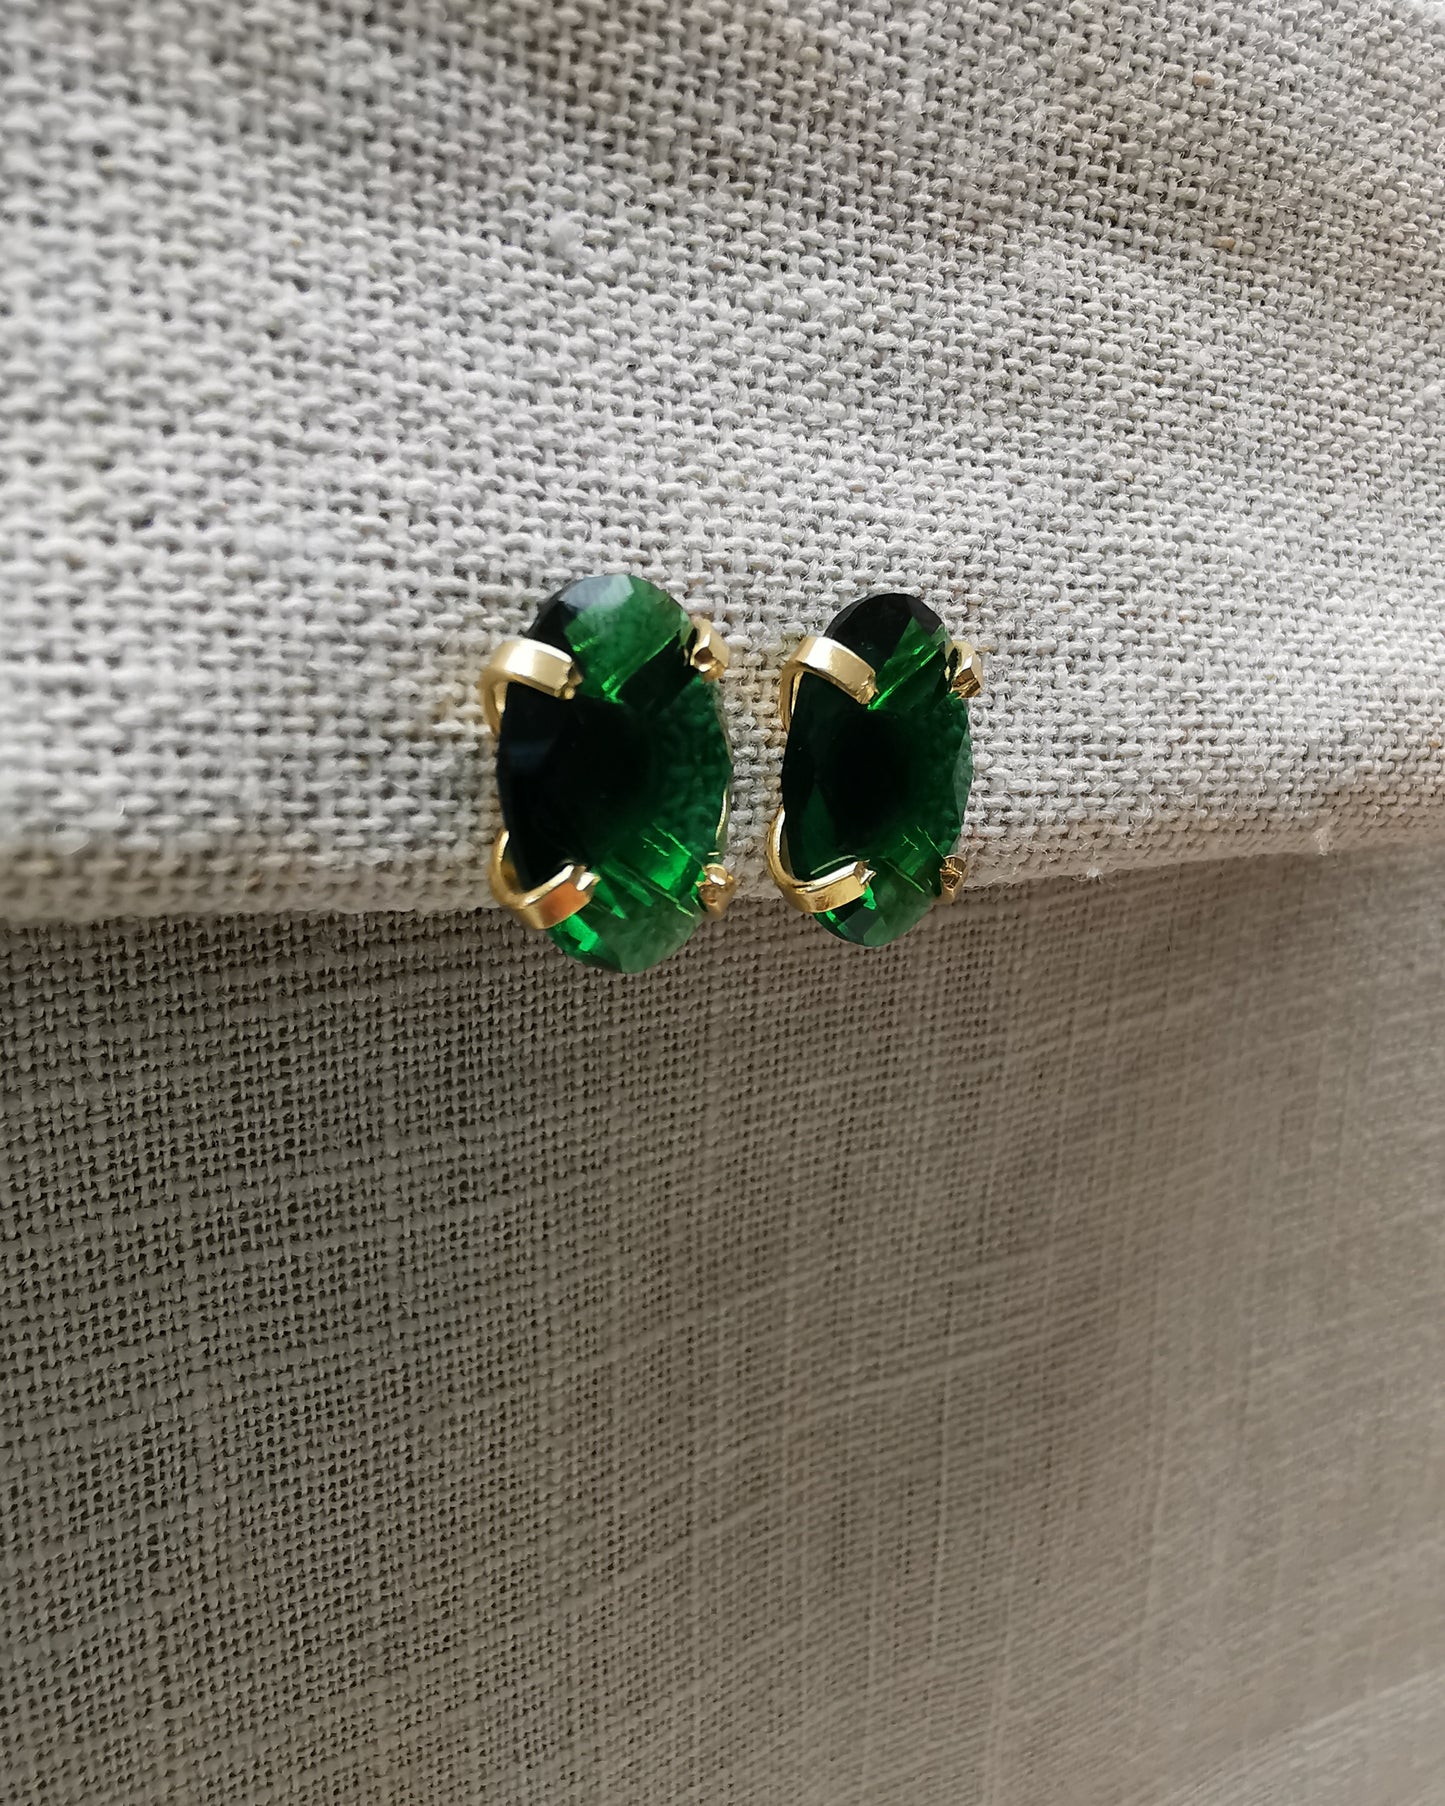 Emerald Quartz Stud Earrings.